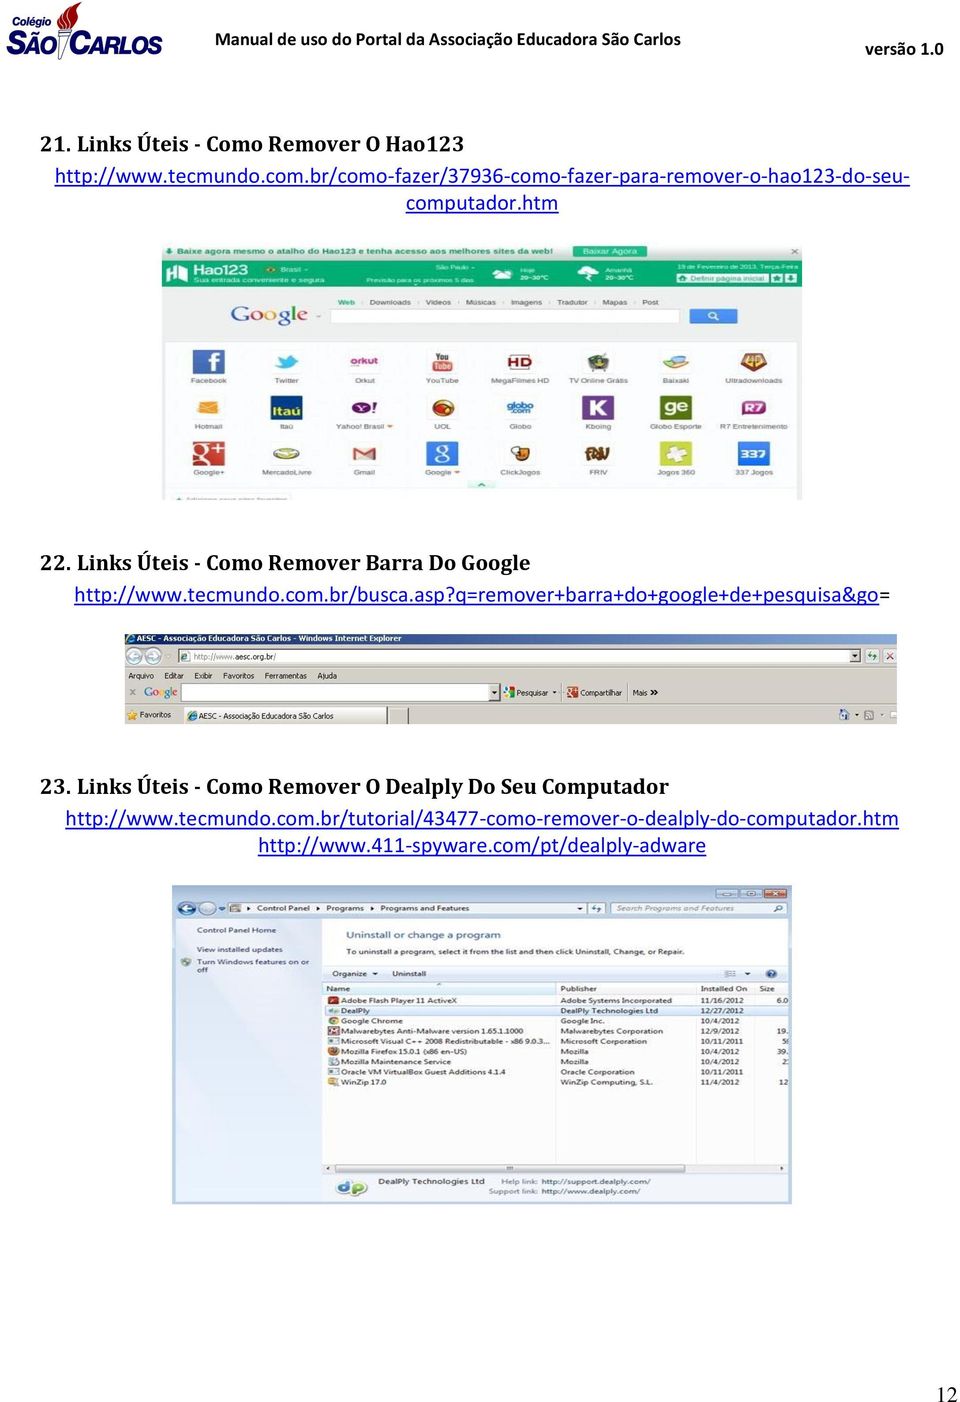 Links Úteis - Como Remover Barra Do Google http://www.tecmundo.com.br/busca.asp?